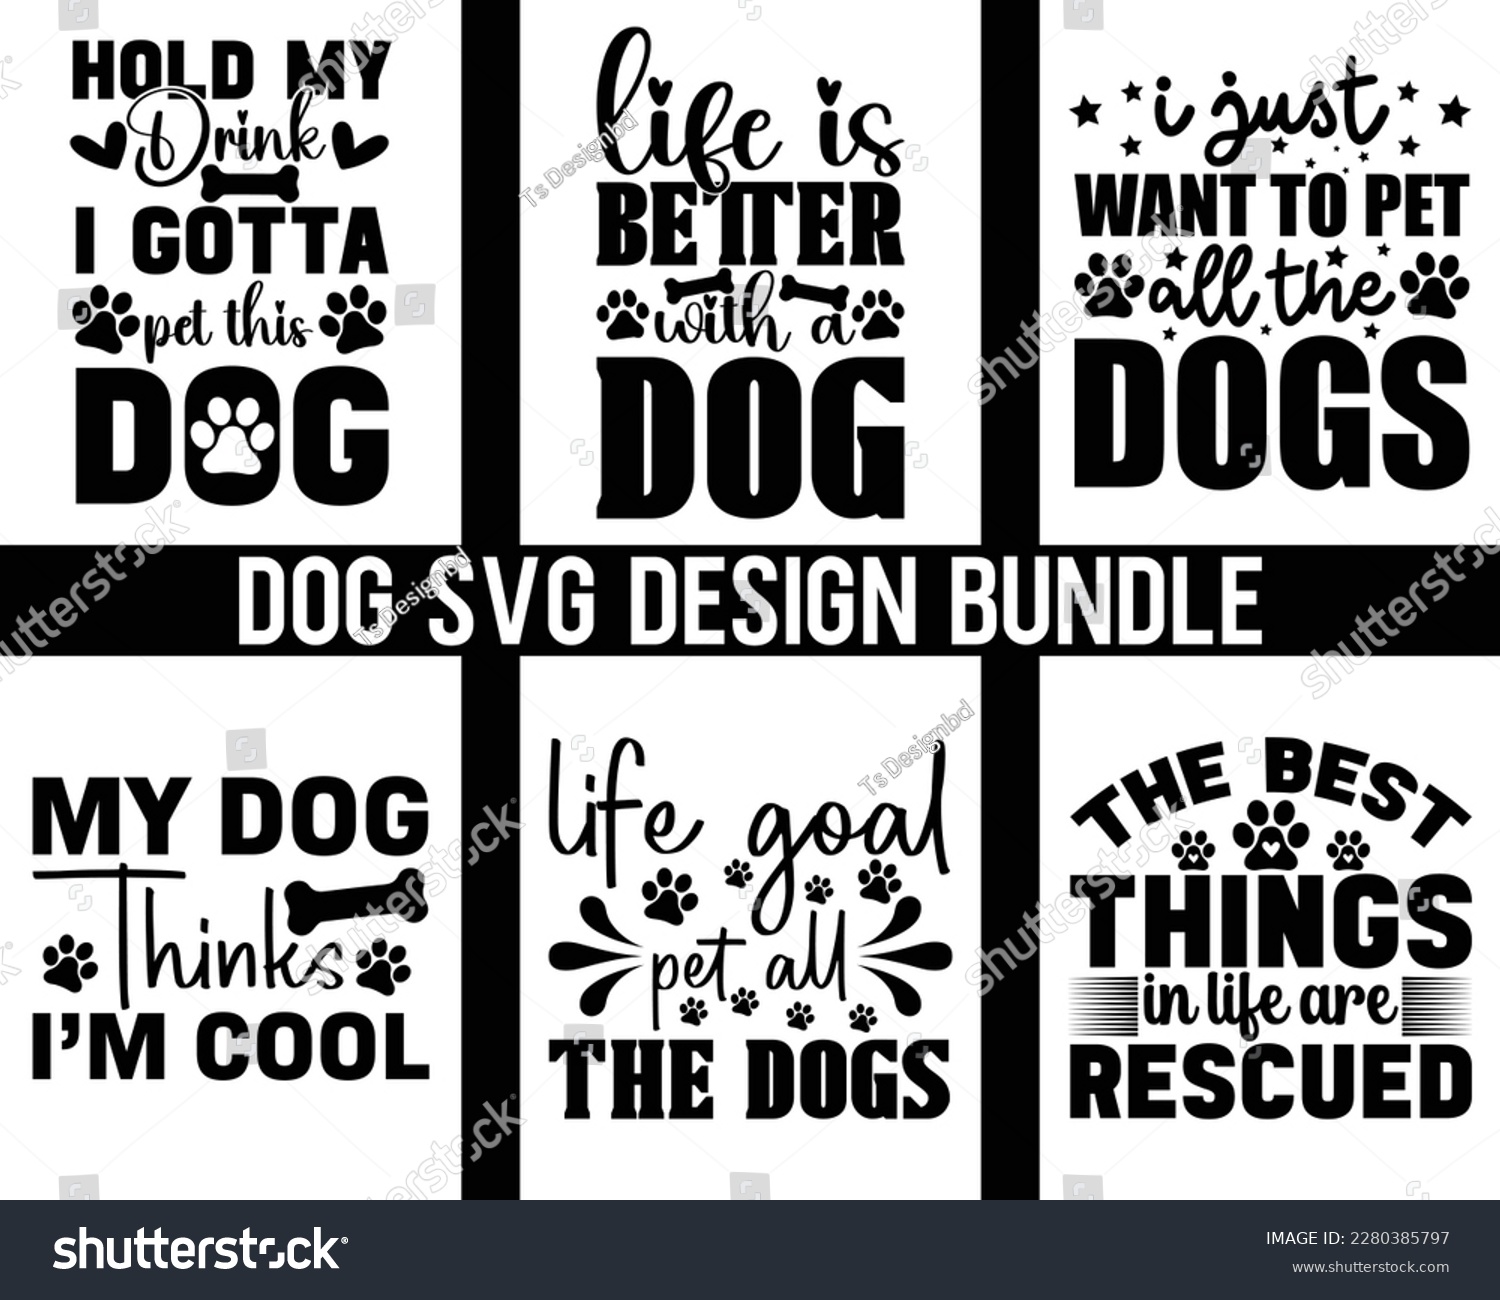 SVG of Dog SVG bundle Design,Funny Dog Quotes SVG Designs Bundle,Touching Dog quotes t-shirt designs bundle, fur mom svg,pawsitive svg,Cut Files, Silhouette, dog lover svg, svg